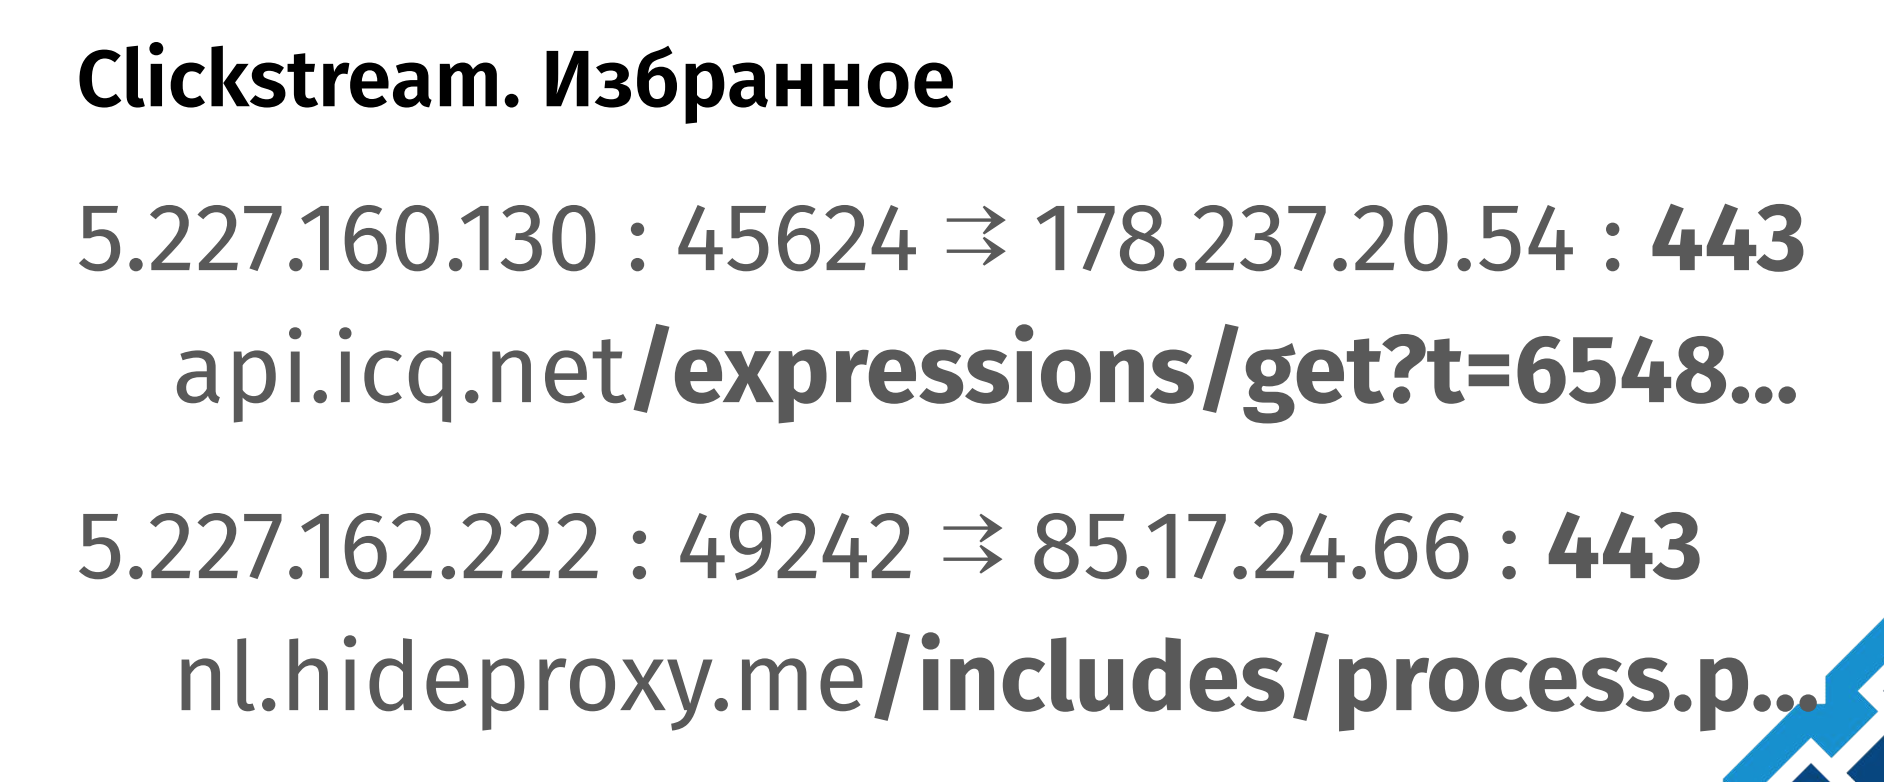 [ВОЗМОЖНО] СОРМ расшифровывает HTTPS трафик к Mail.ru и ICQ - 2